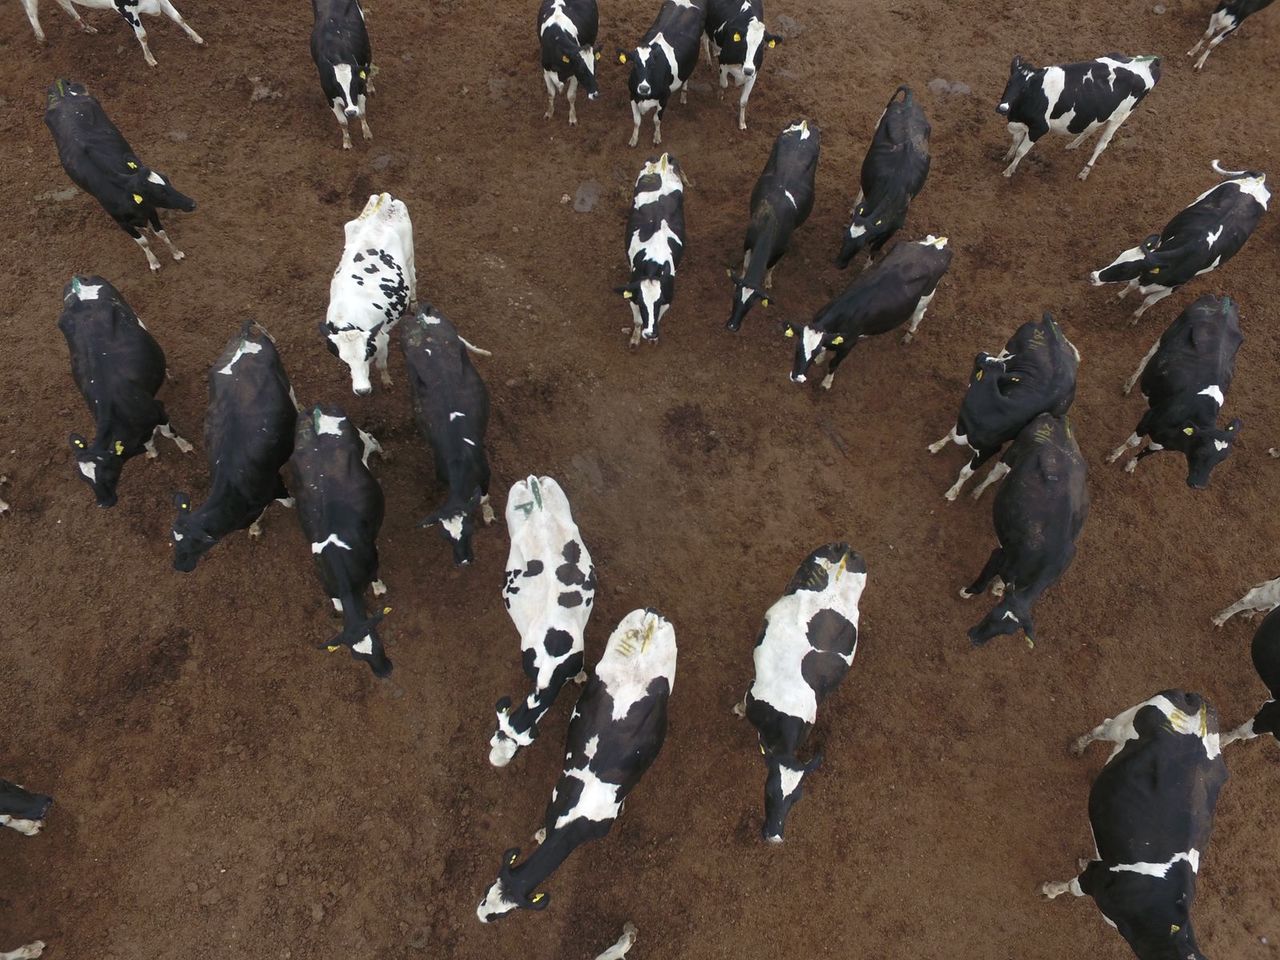 Emisiones de metano del ganado contribuyen al cambio climático pero problemática no está regulada.